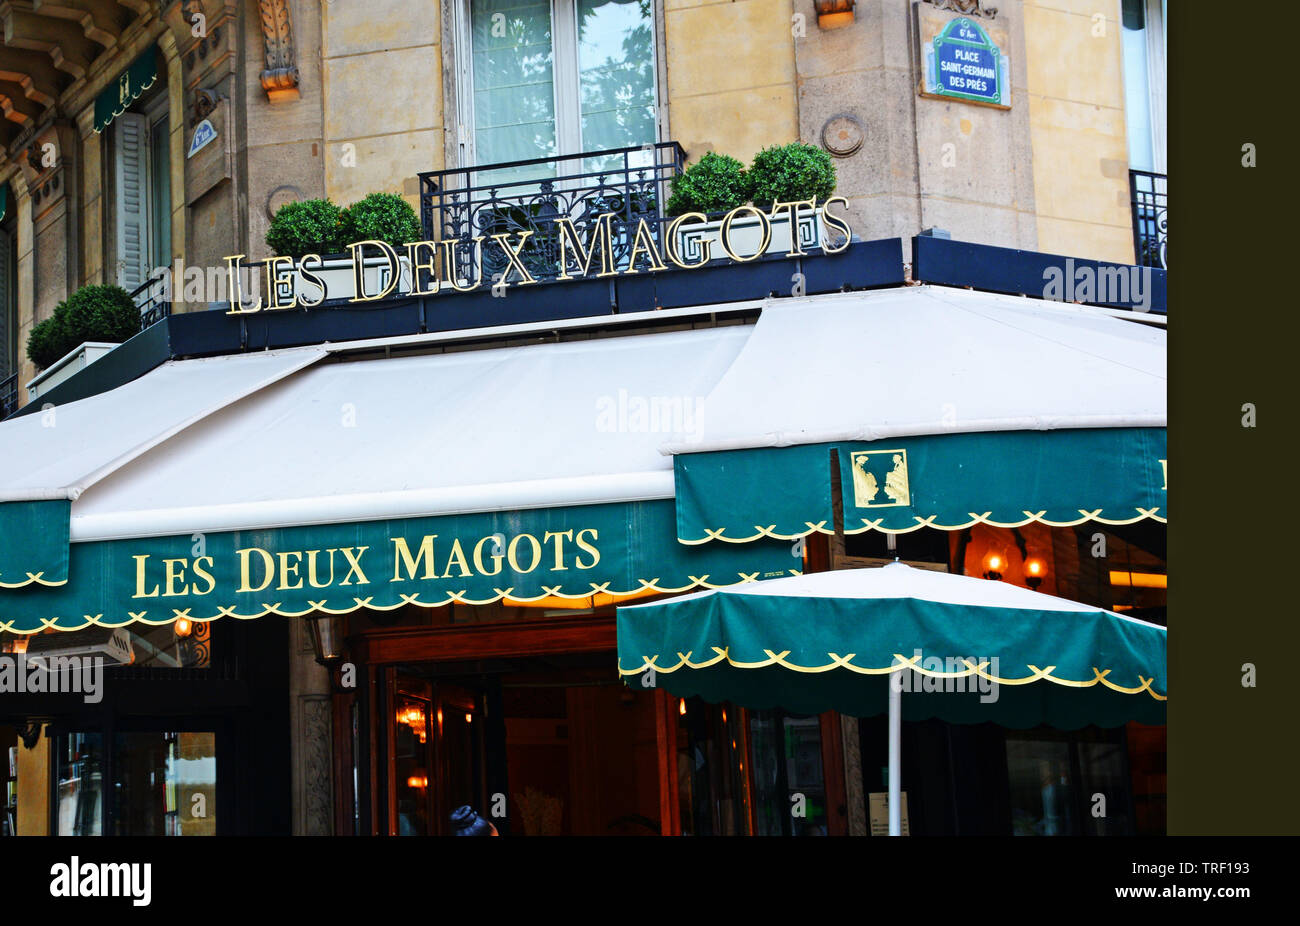 Les Deux Magots, famous café in the Saint-Germain-des-Prés area of Paris, rendez-vous of the literary and intellectual élite of the city. Paris, Franc Stock Photo